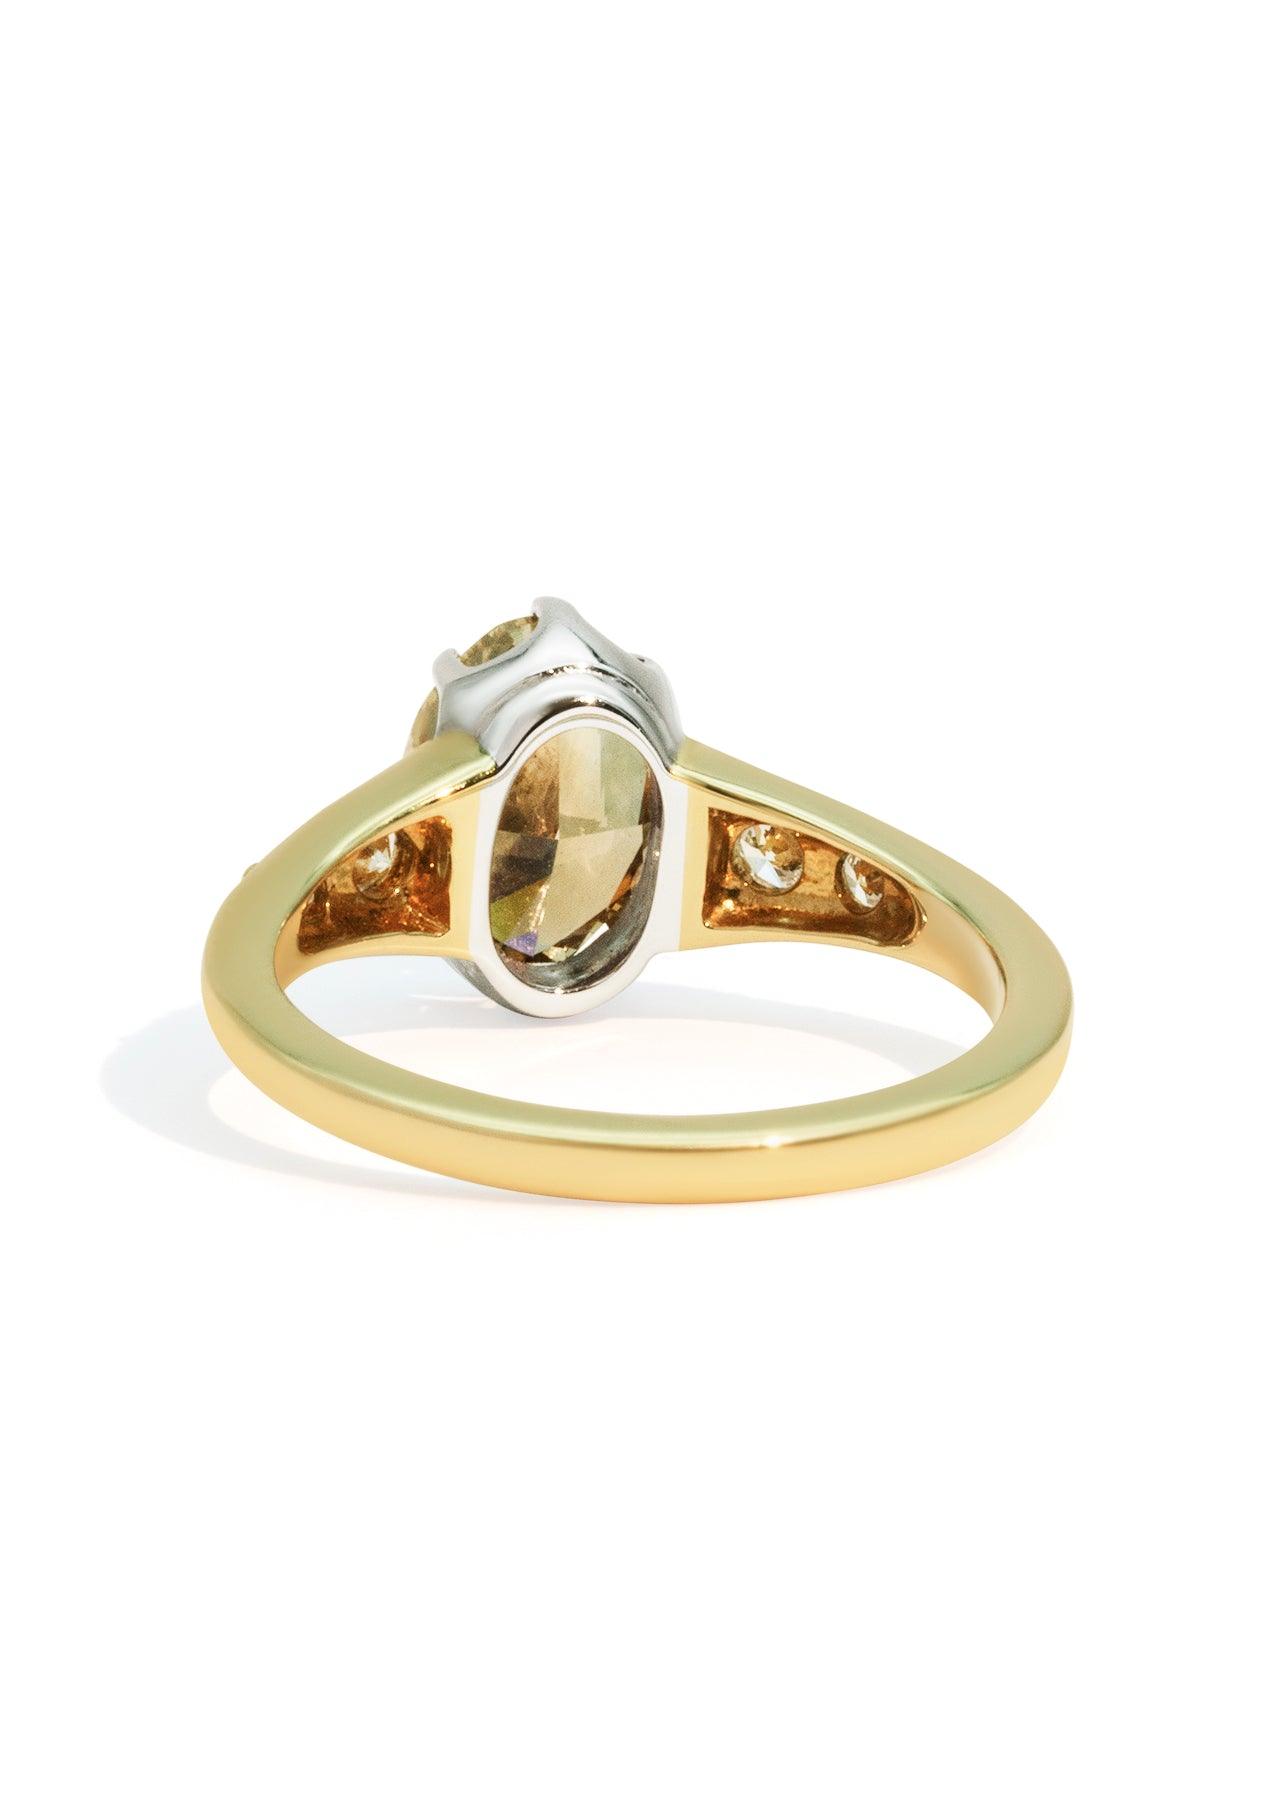 The Magnolia 2.61ct Champagne Diamond Ring